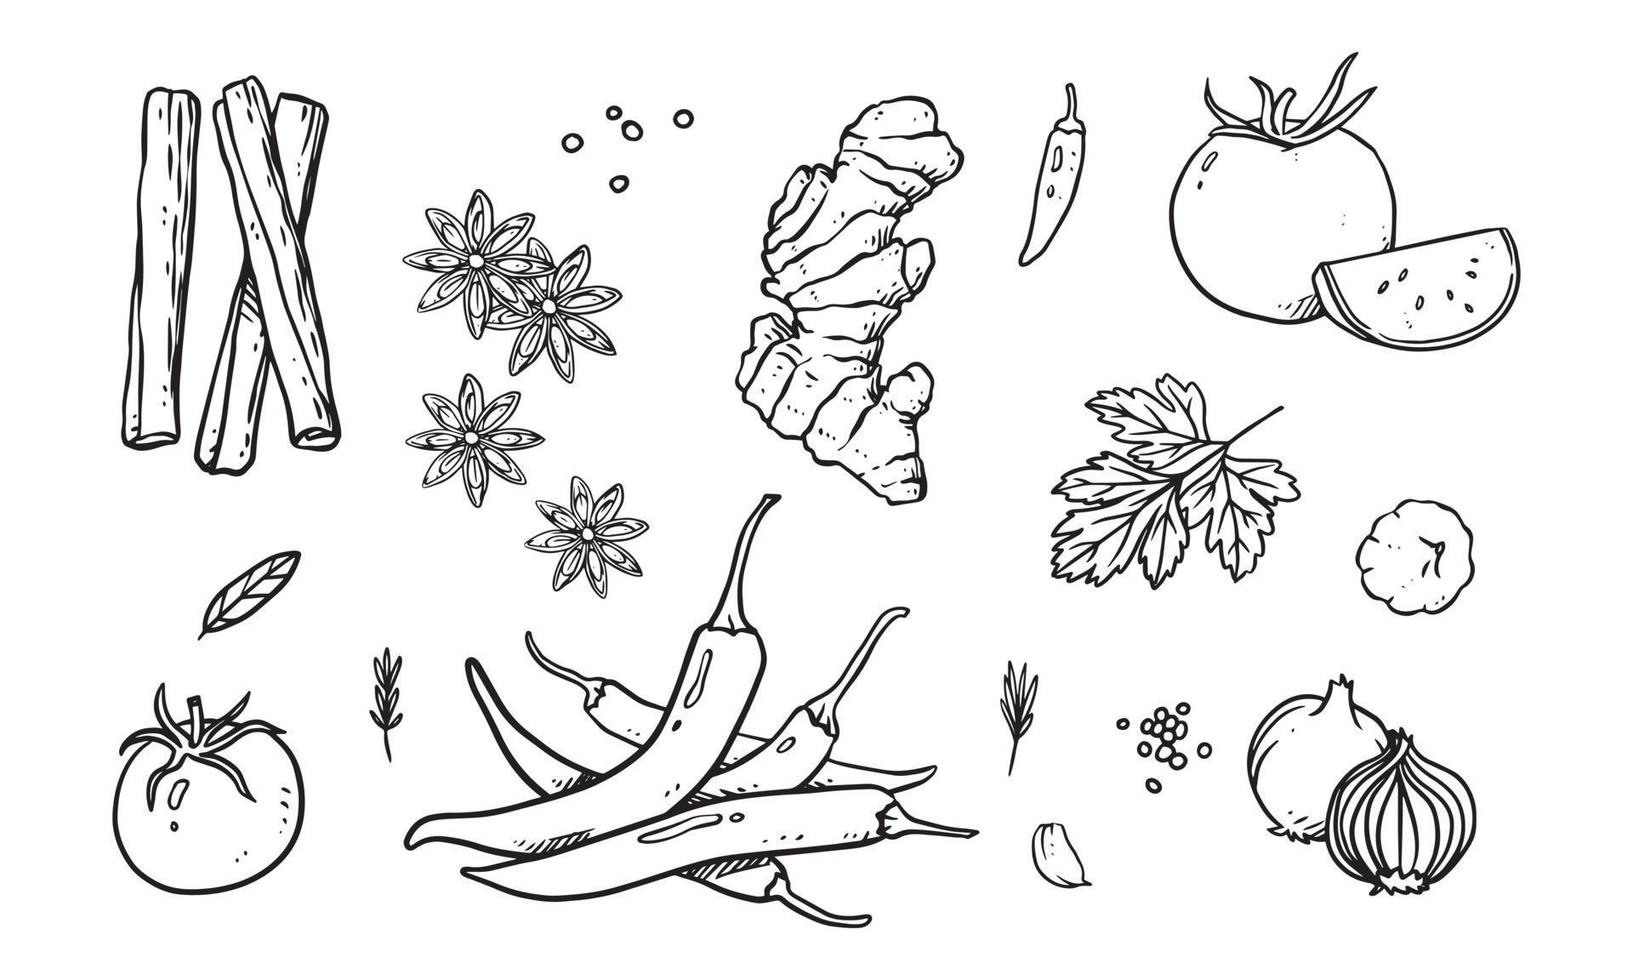 set di verdure, frutta e spezie illustrazione vettoriale disegnata a mano. cibo sano disegnato con line art per il design dei materiali